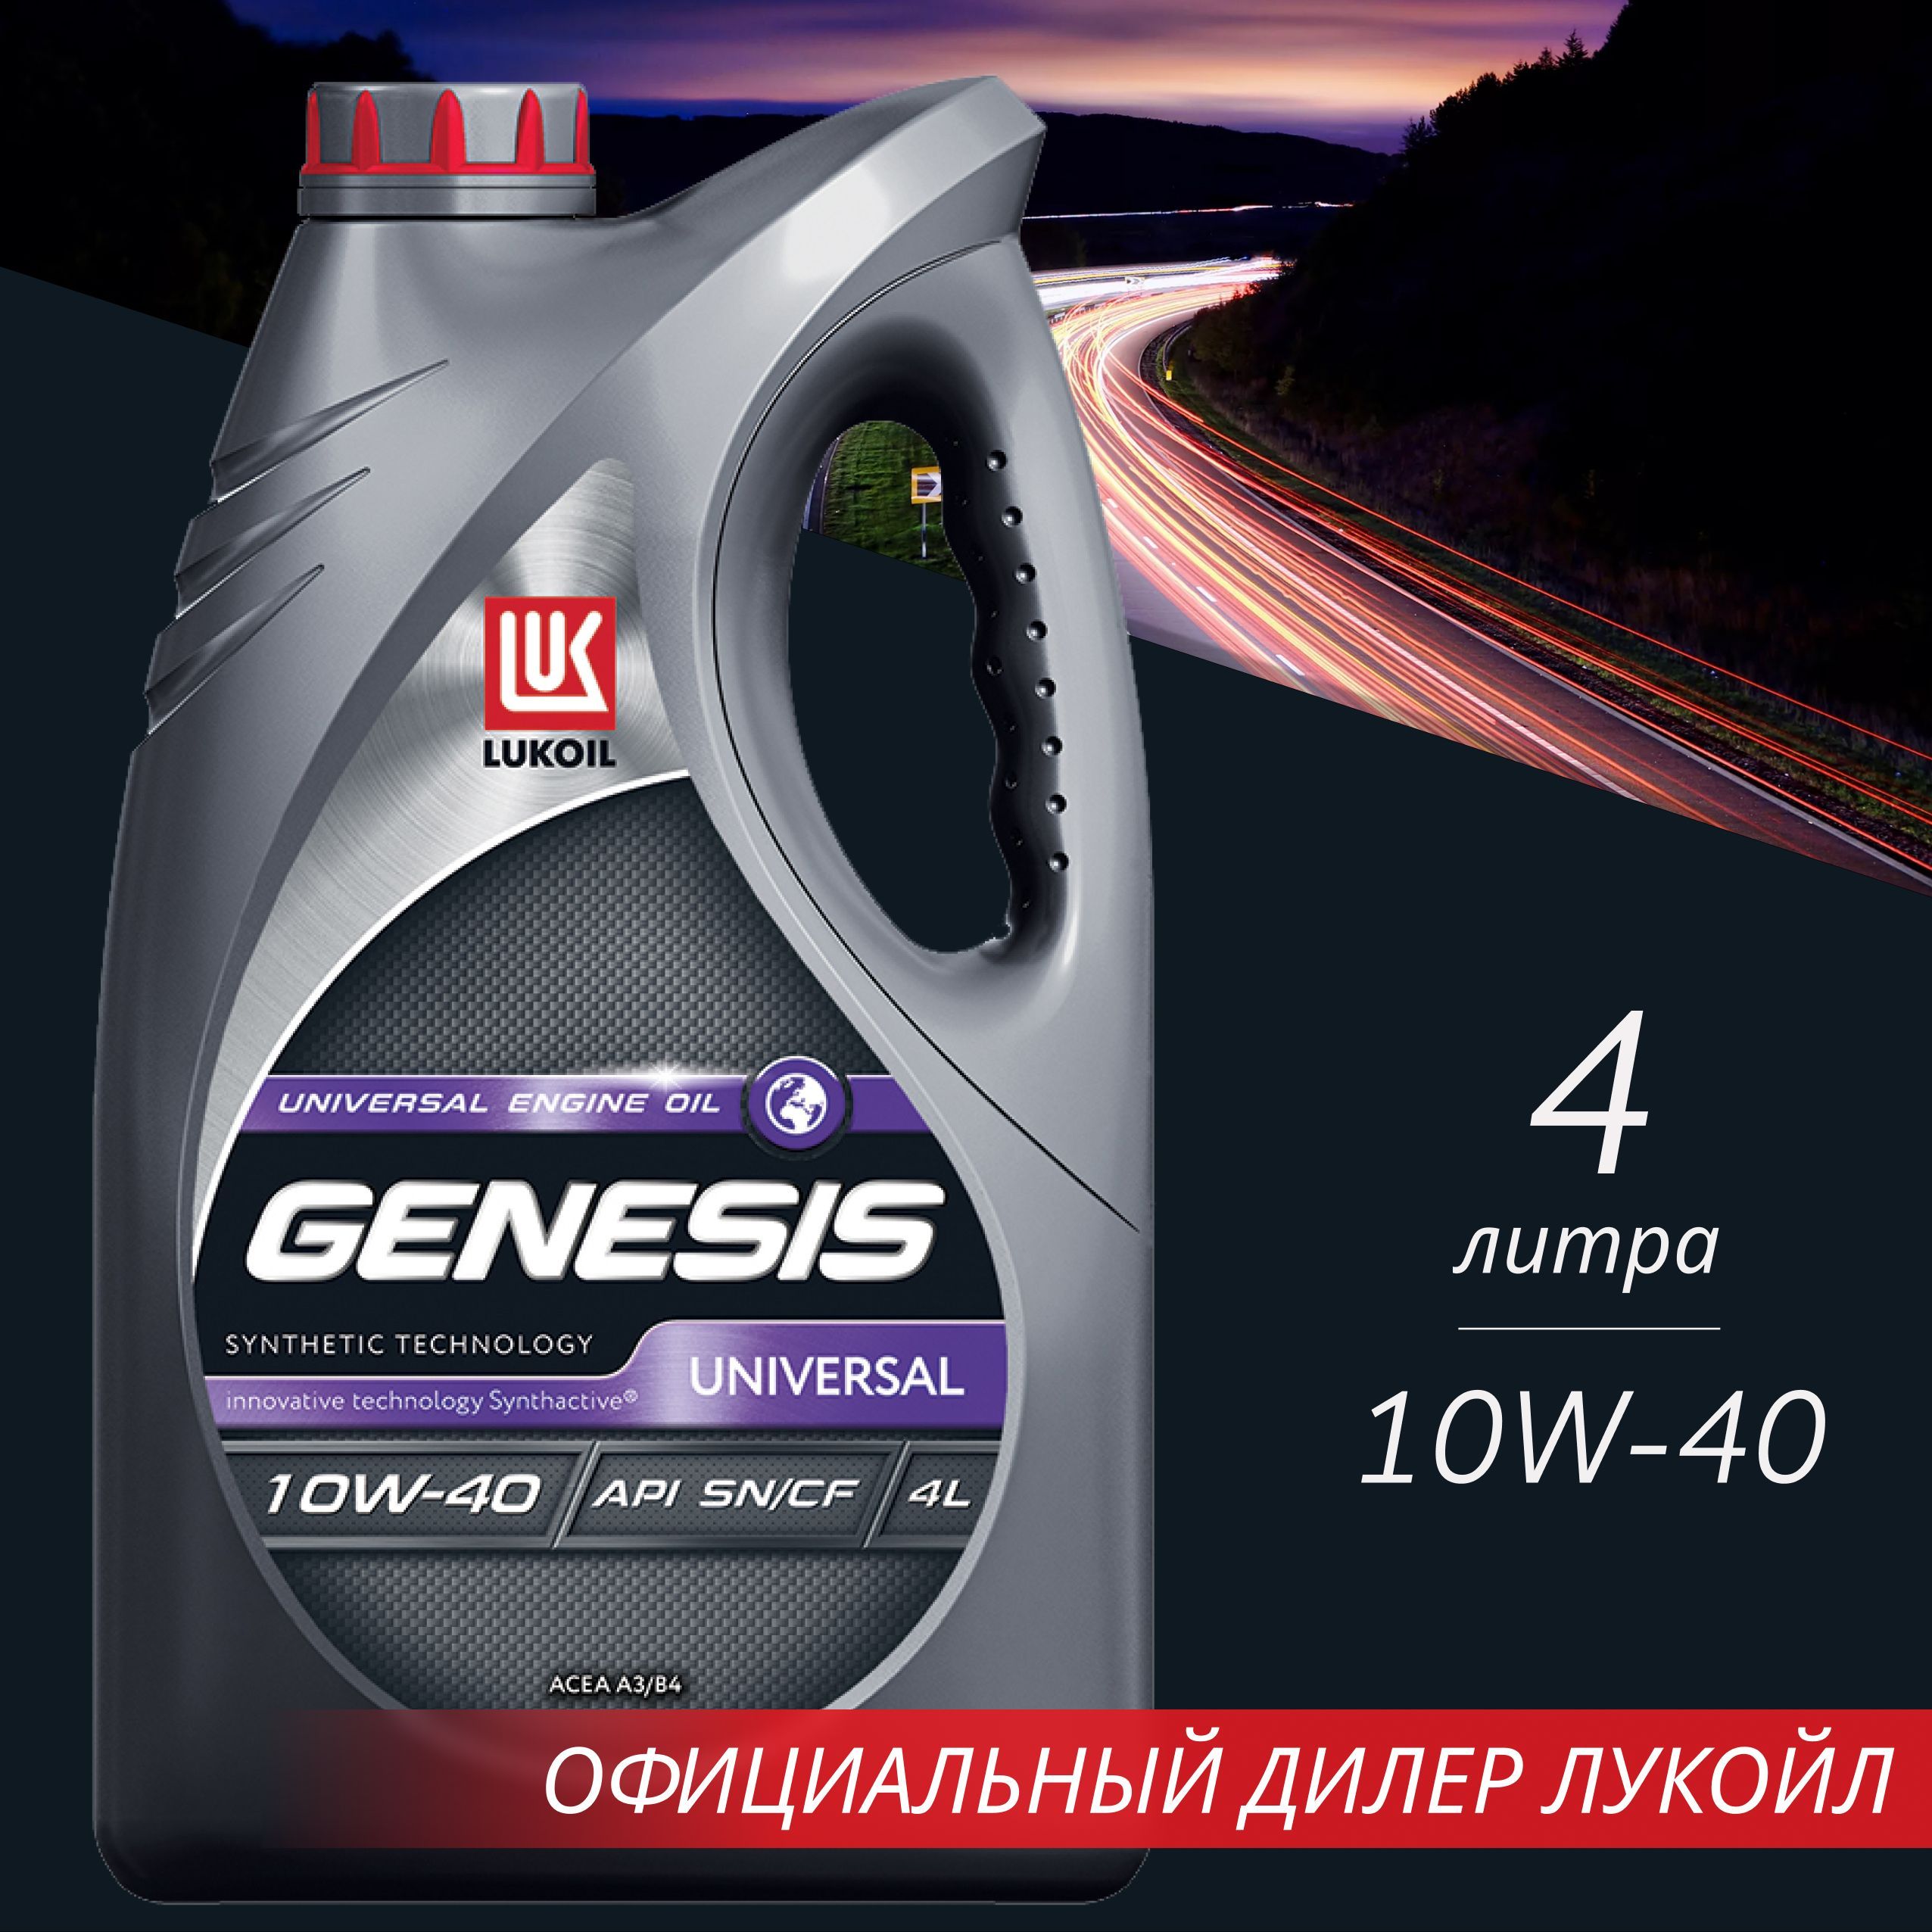 Тест масла лукойл генезис. Генезис универсал 10w 40. 3148646 Lukoil Genesis Universal 10w-40 4l. Лукойл Генезис 10w 40 универсал синтетика. Моторное масло Генезис 10w 40 полусинтетика.